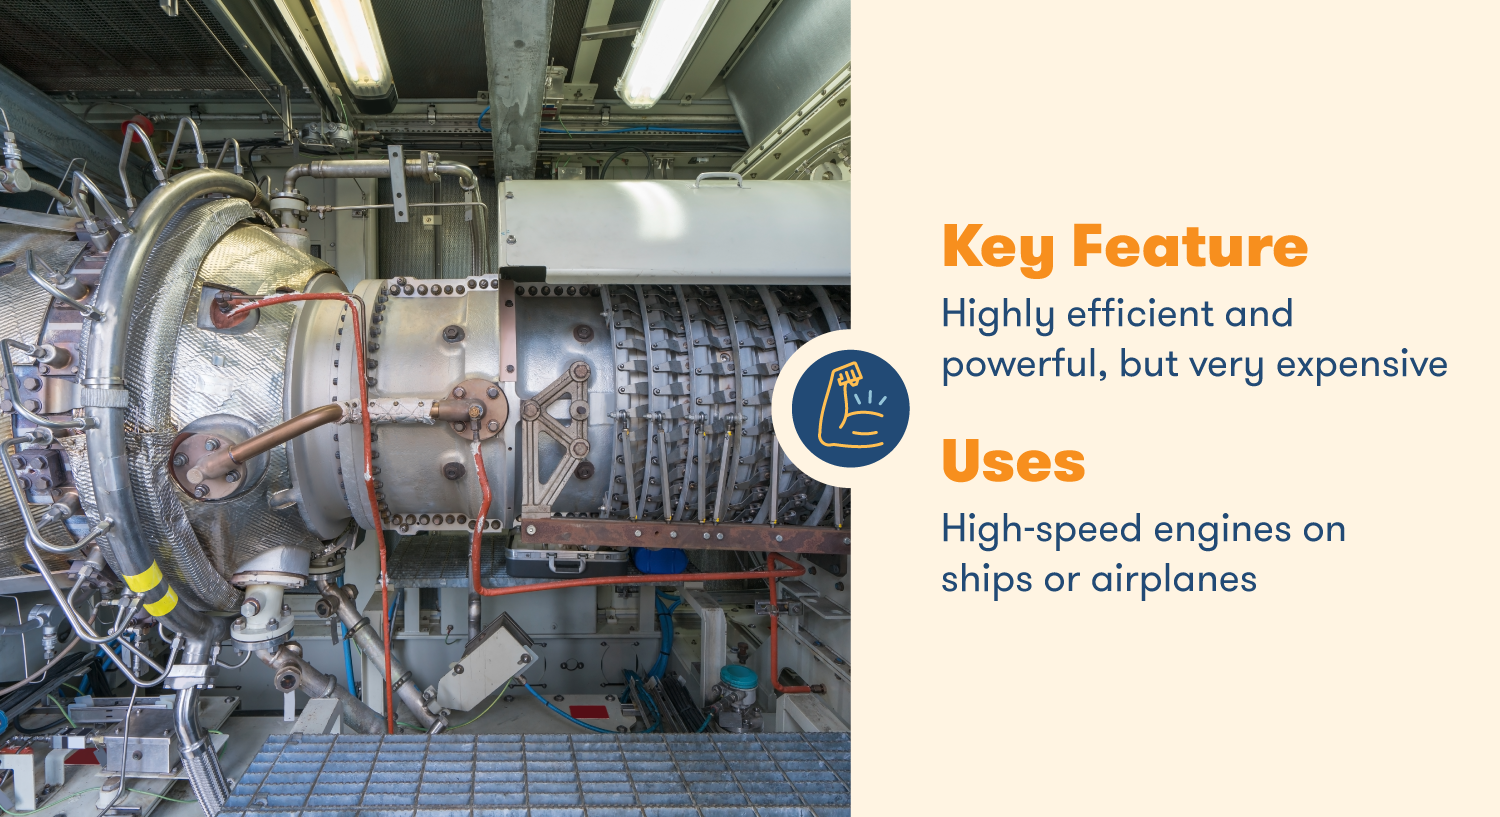 Осевые воздушные компрессоры - это высокоэффективные, но дорогие компрессоры, используемые для высокоскоростных двигателей на судах и самолетах.